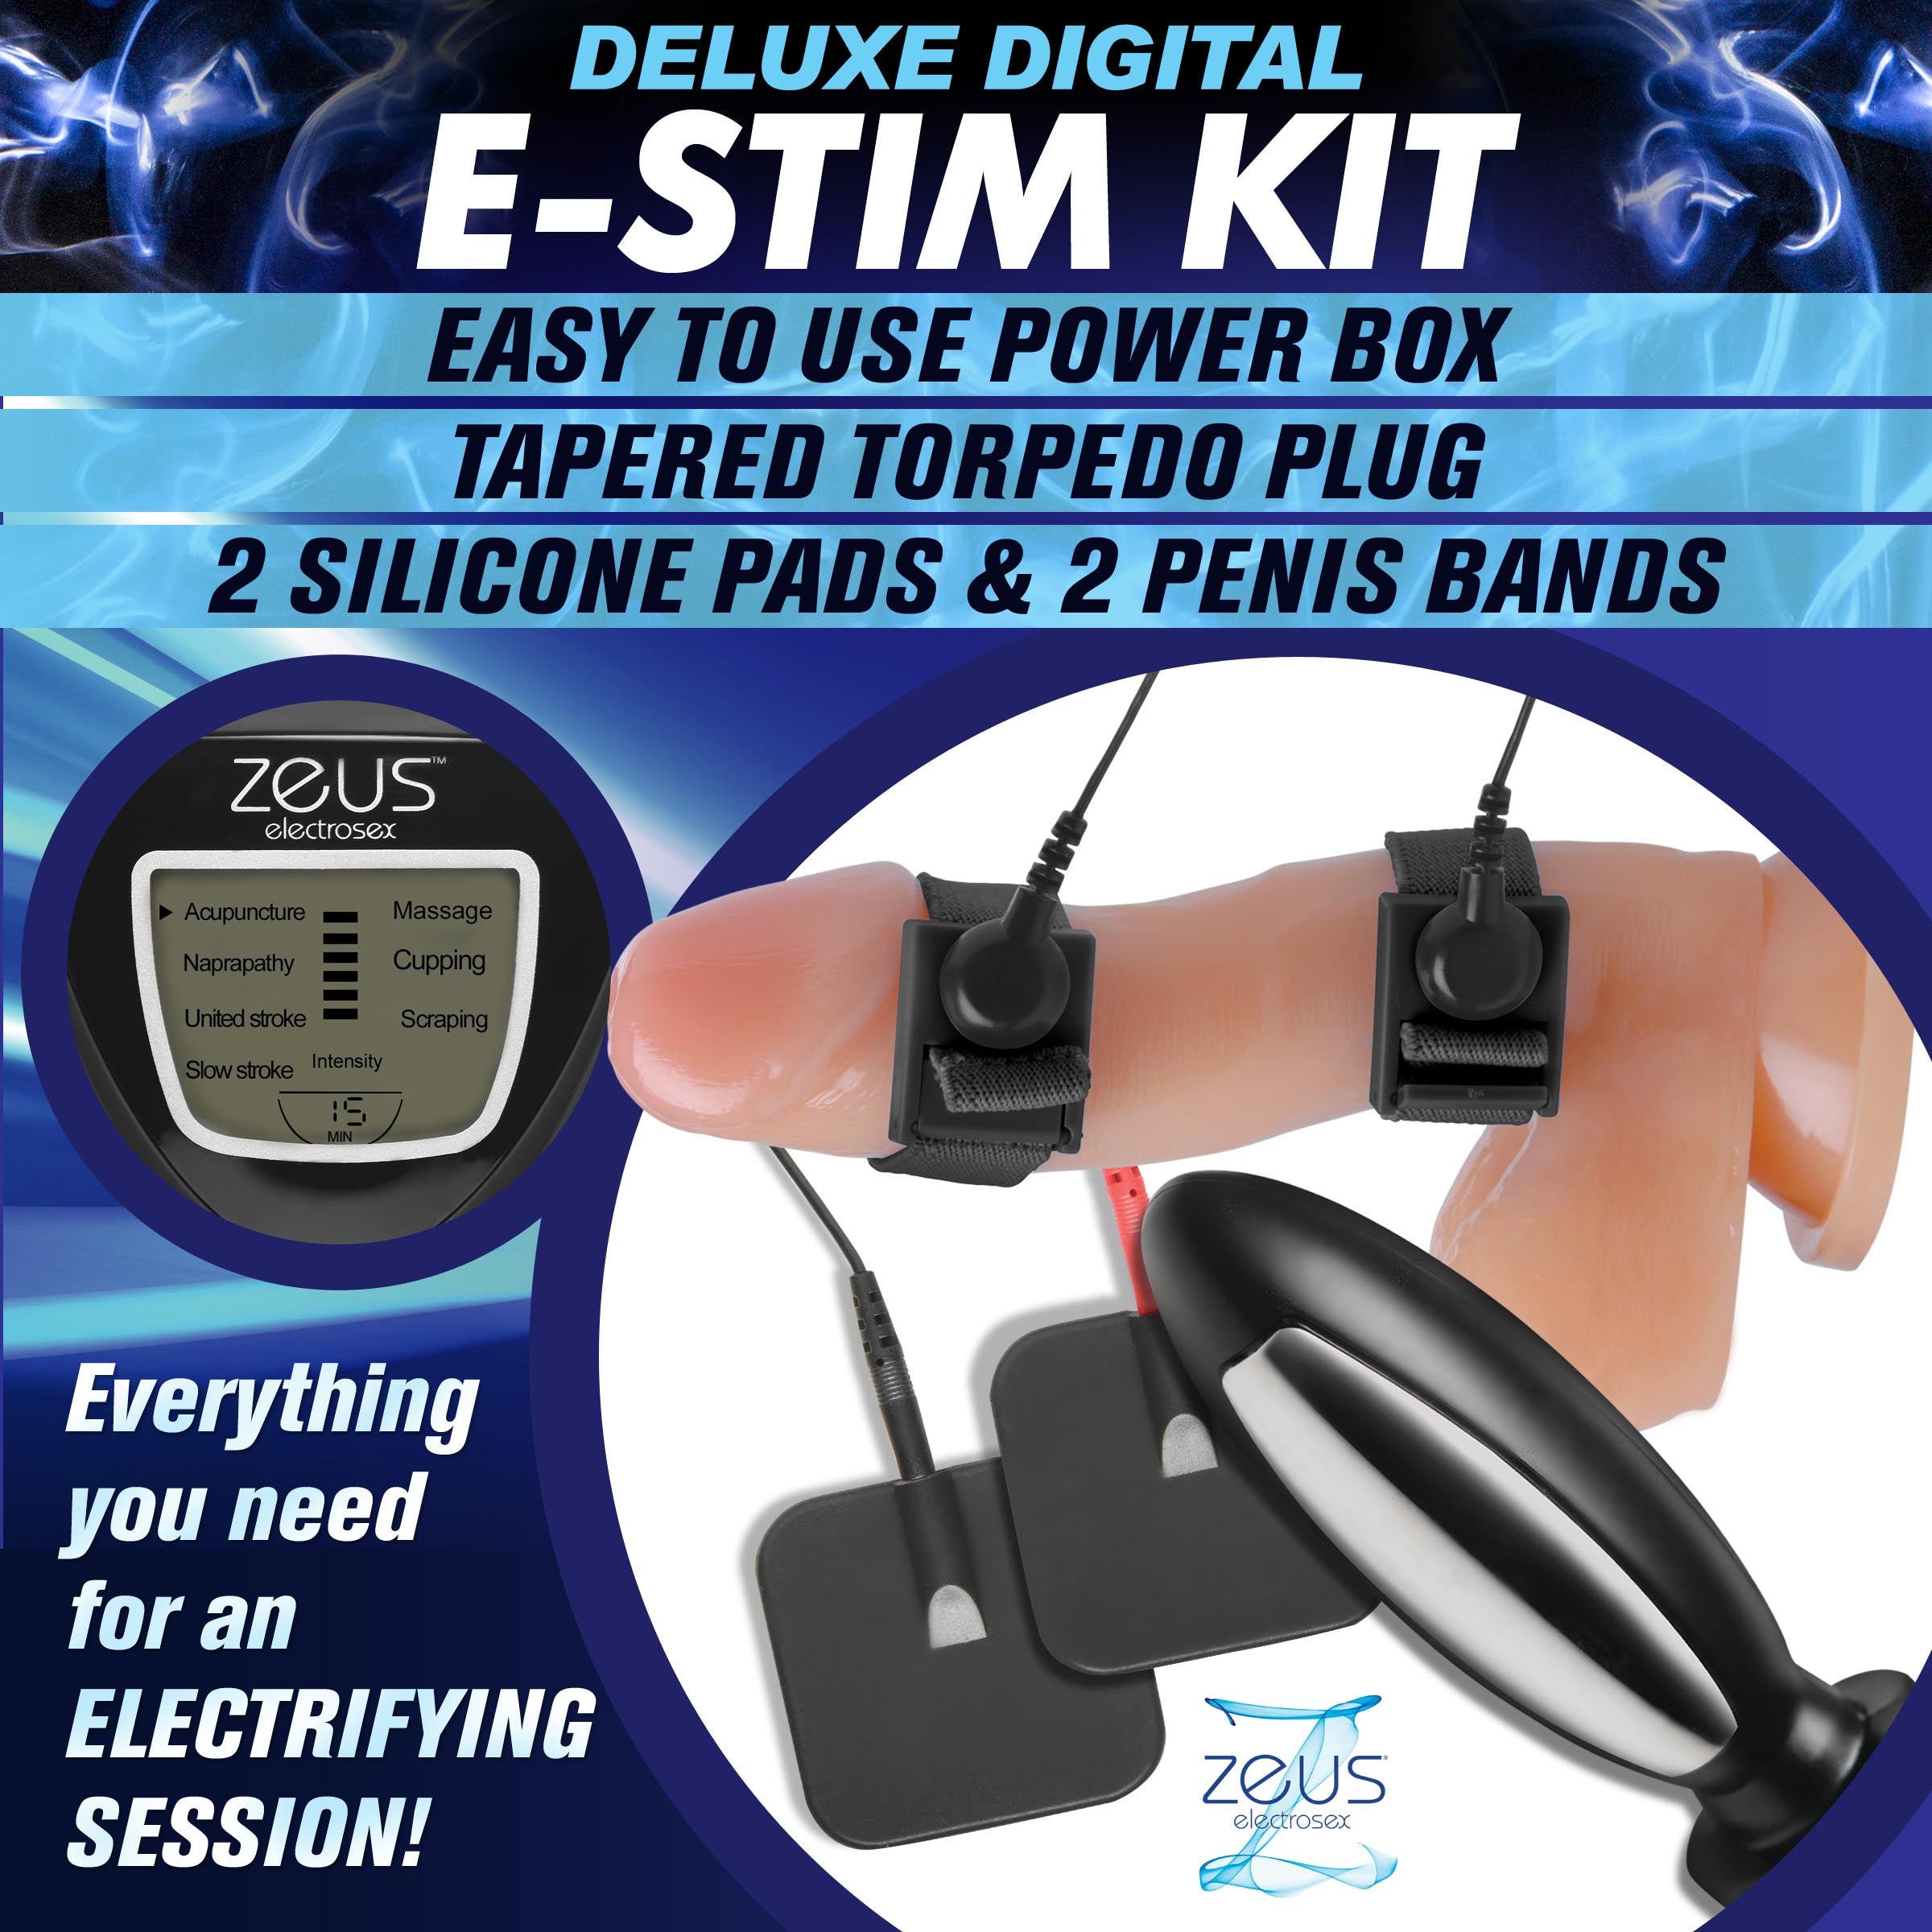 Zeus Digital E-Stim Unit – Healthy & Active